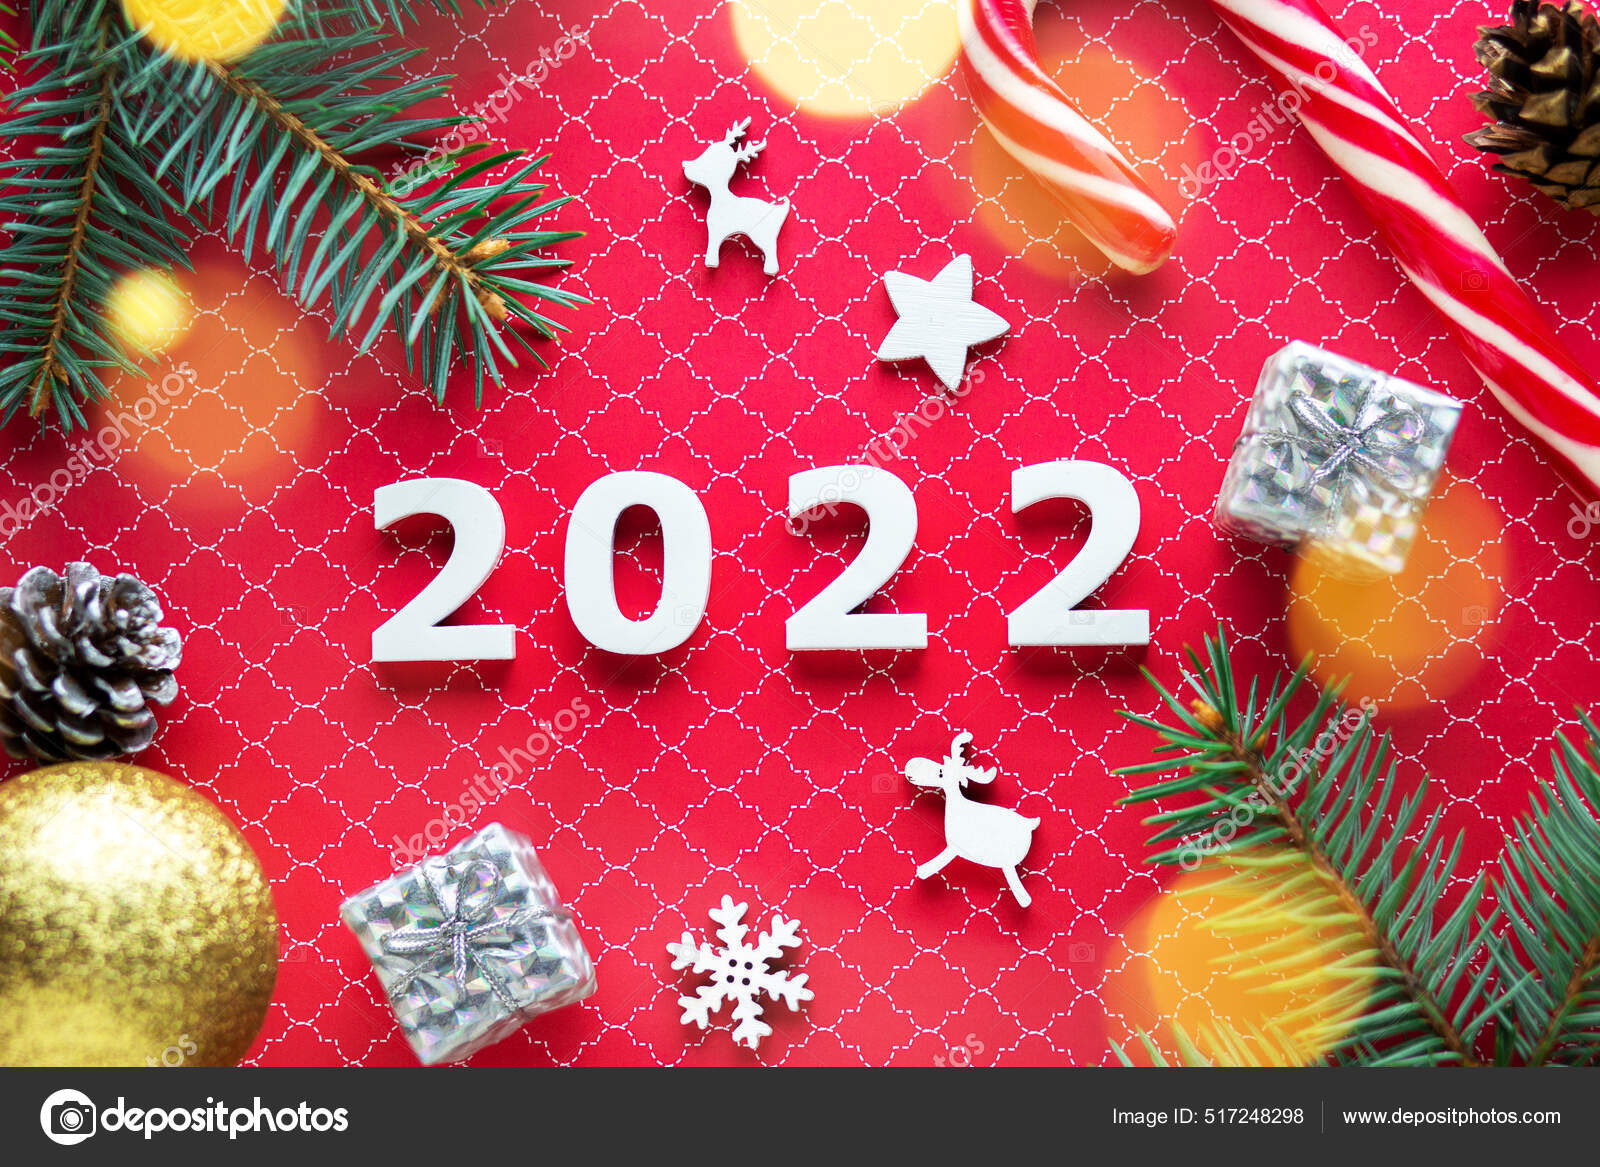 Tận hưởng một mùa Giáng Sinh ấm áp và đầy niềm vui cùng số Giáng Sinh 2022, kẹo năm mới 2022 và hình nền độc đáo. Tất cả những điều tuyệt vời nhất đều có trong bộ sưu tập hình nền Noel 2022 dành cho bạn.